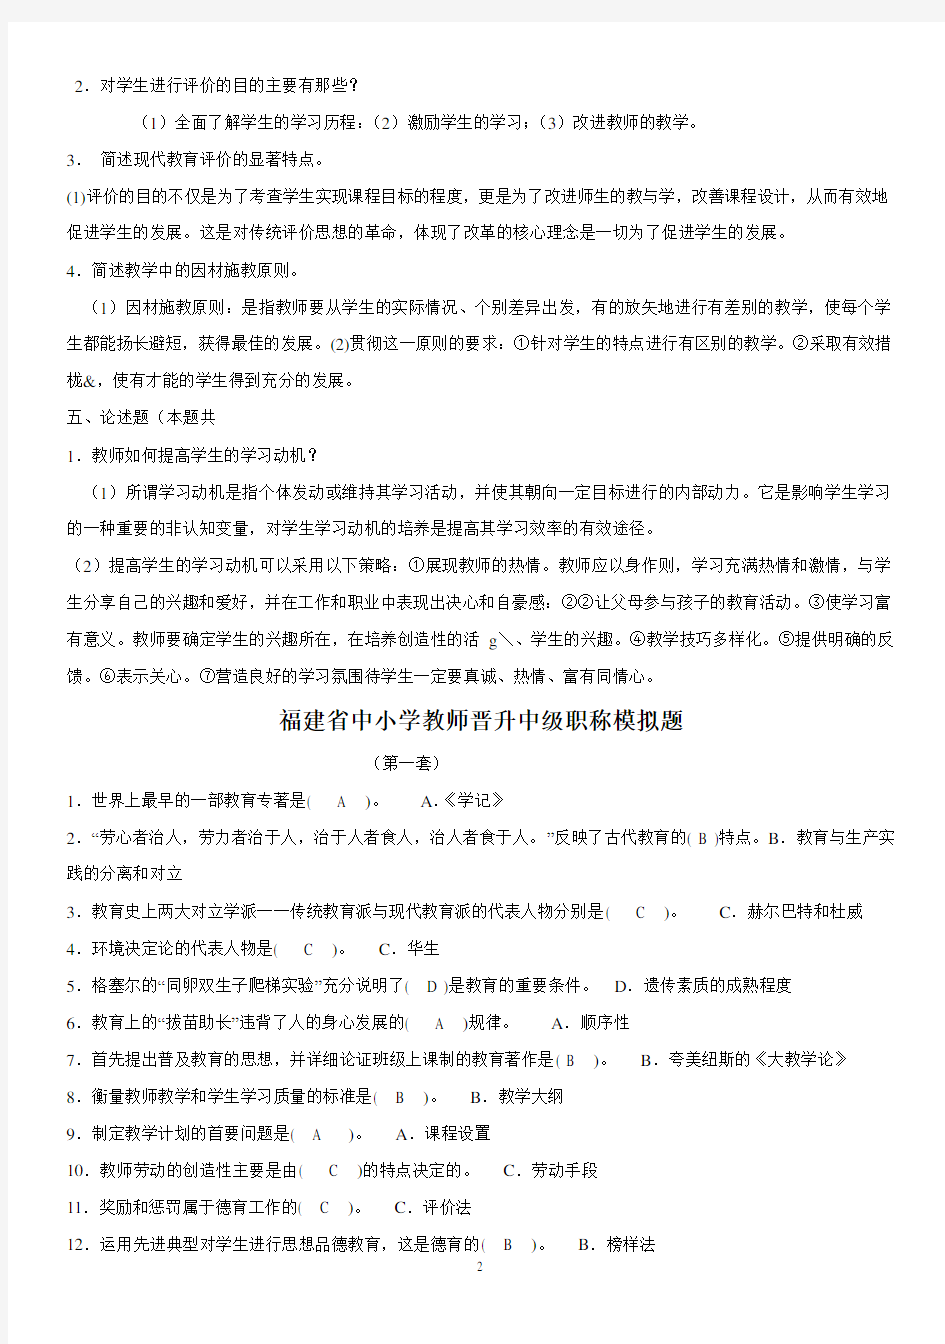 福建省中小学教师晋升中级职称考试模拟题(含答案)